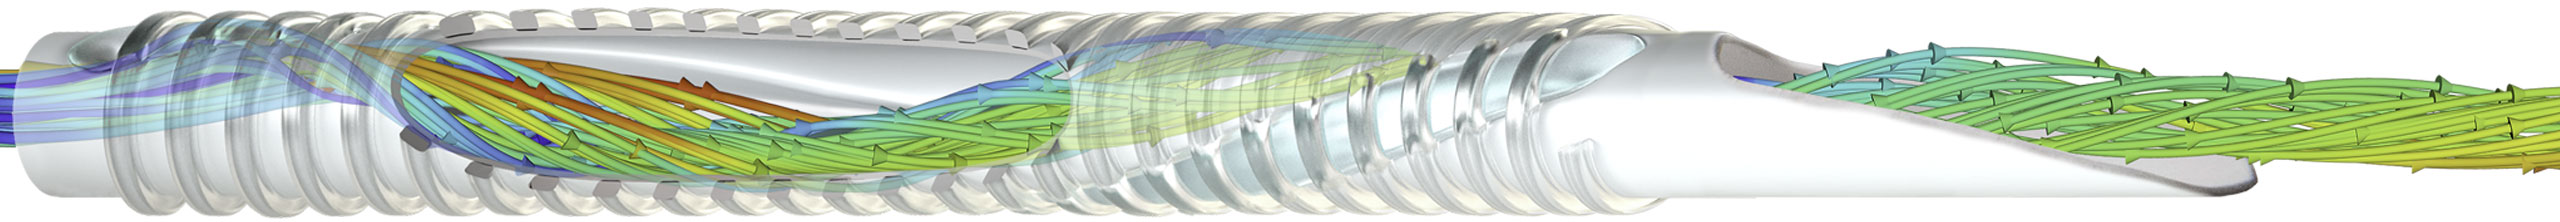 Spiral-laminar-flow-technology